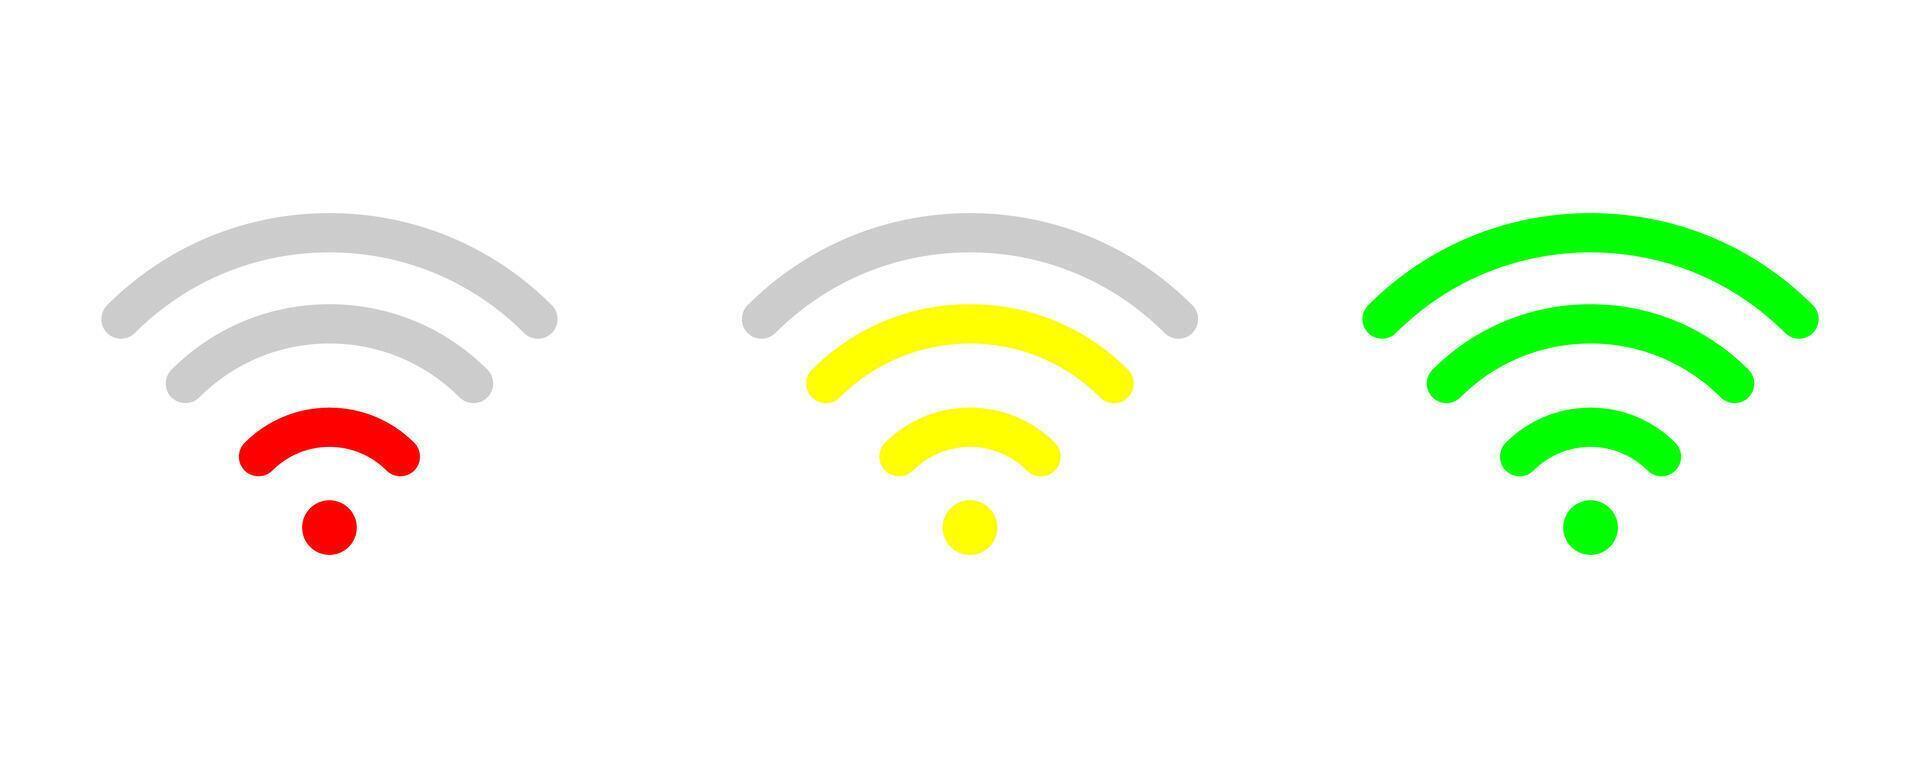 Wi-Fi segnale forza su bianca modello. massimo, medio, minimo senza fili forza segnale. verde, giallo, rosso indicatore. alto, Basso livello segnale. vettore